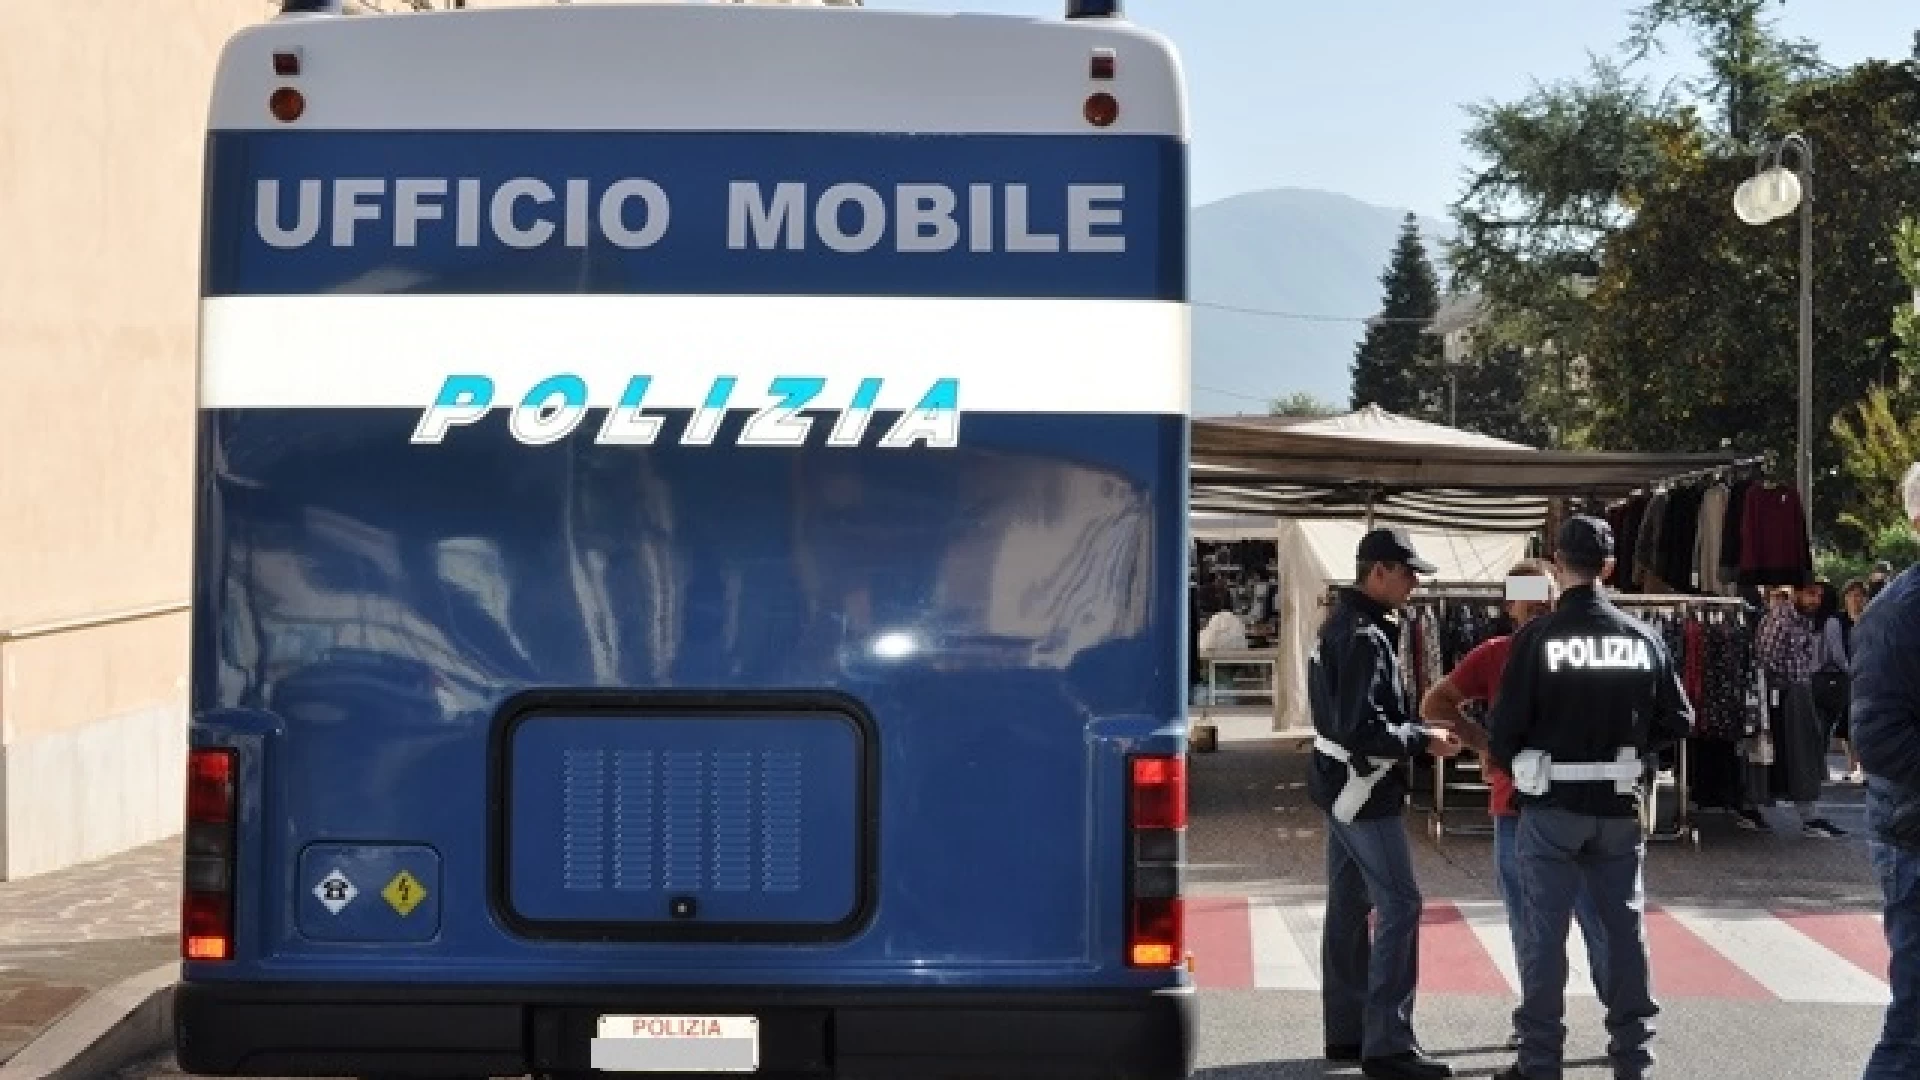 La Polizia di Stato a Venafro con il camper istituzionale.